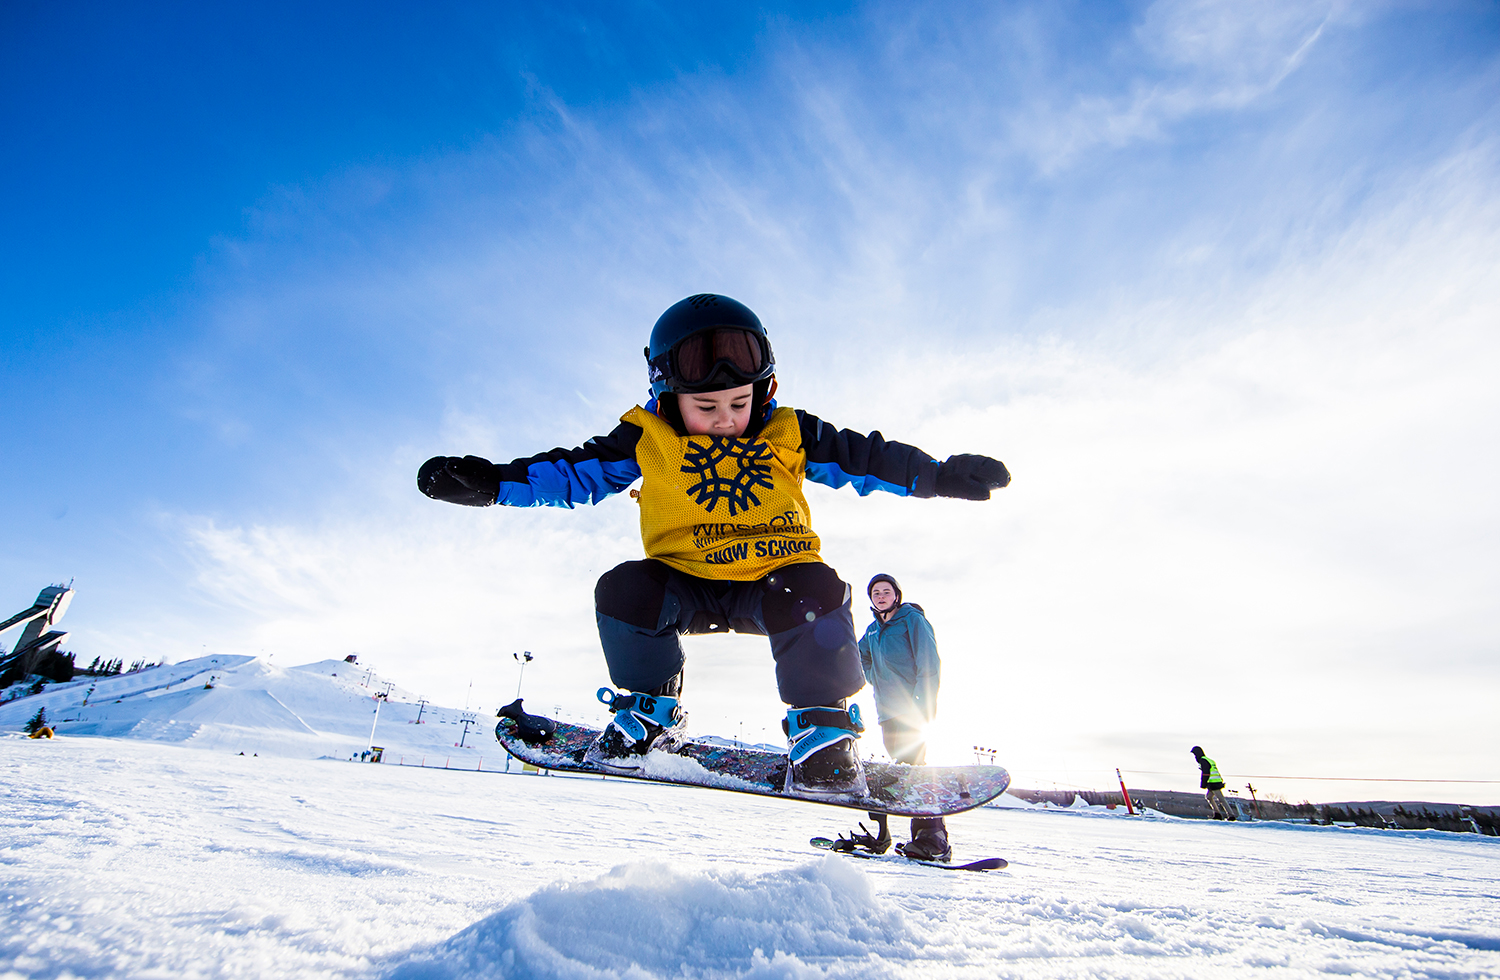 Zwaaien onderzeeër controleren Tips for getting your child into snowboarding, from WinSport & Burton